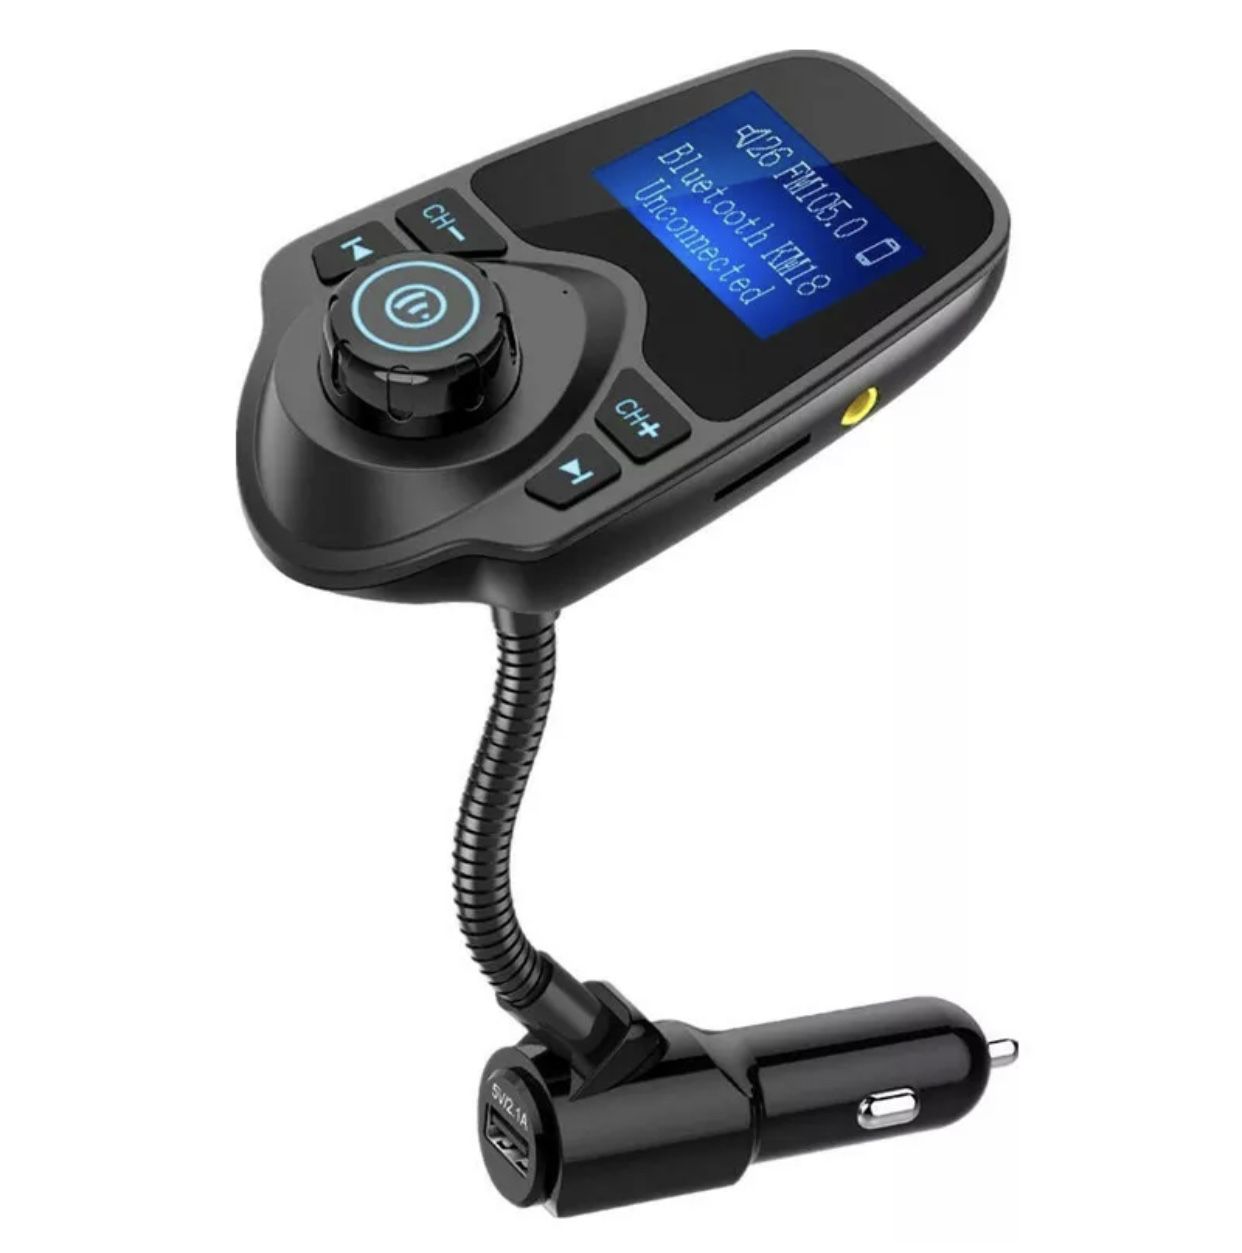 Bluetooth transmitter fm radio MP3 car